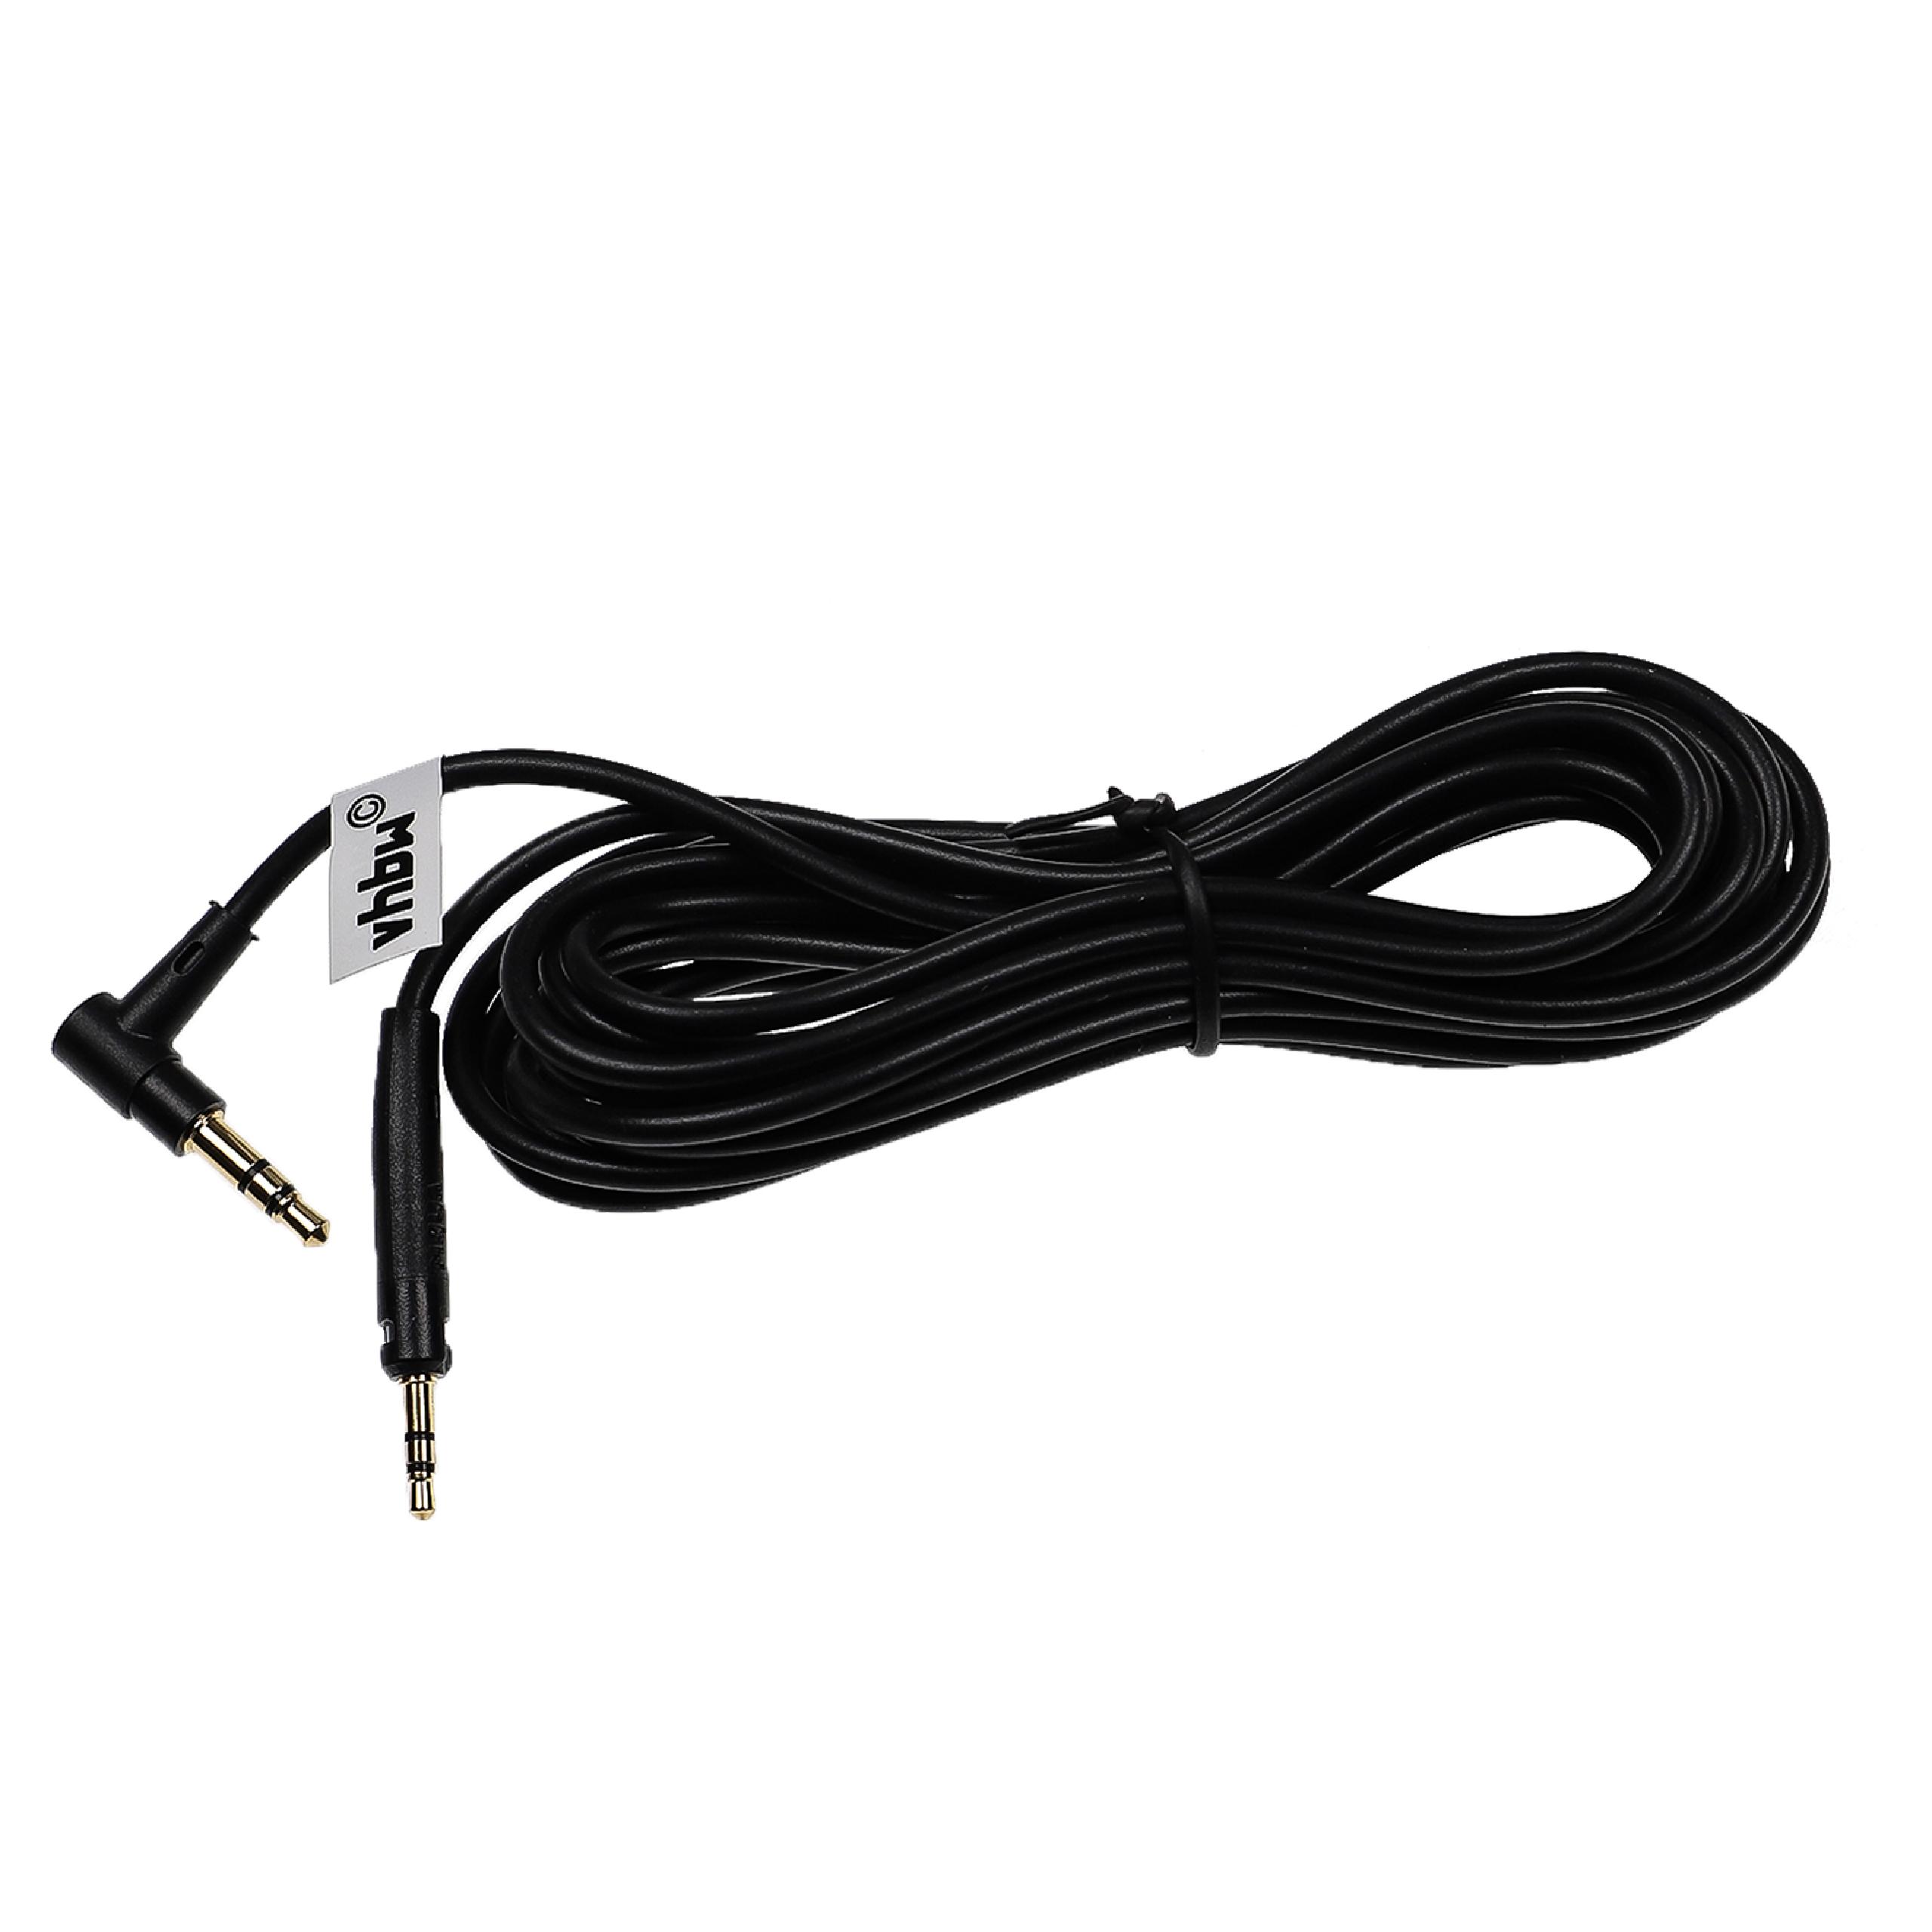 Kabel do słuchawek K840KL AKG - czarny, 3 m